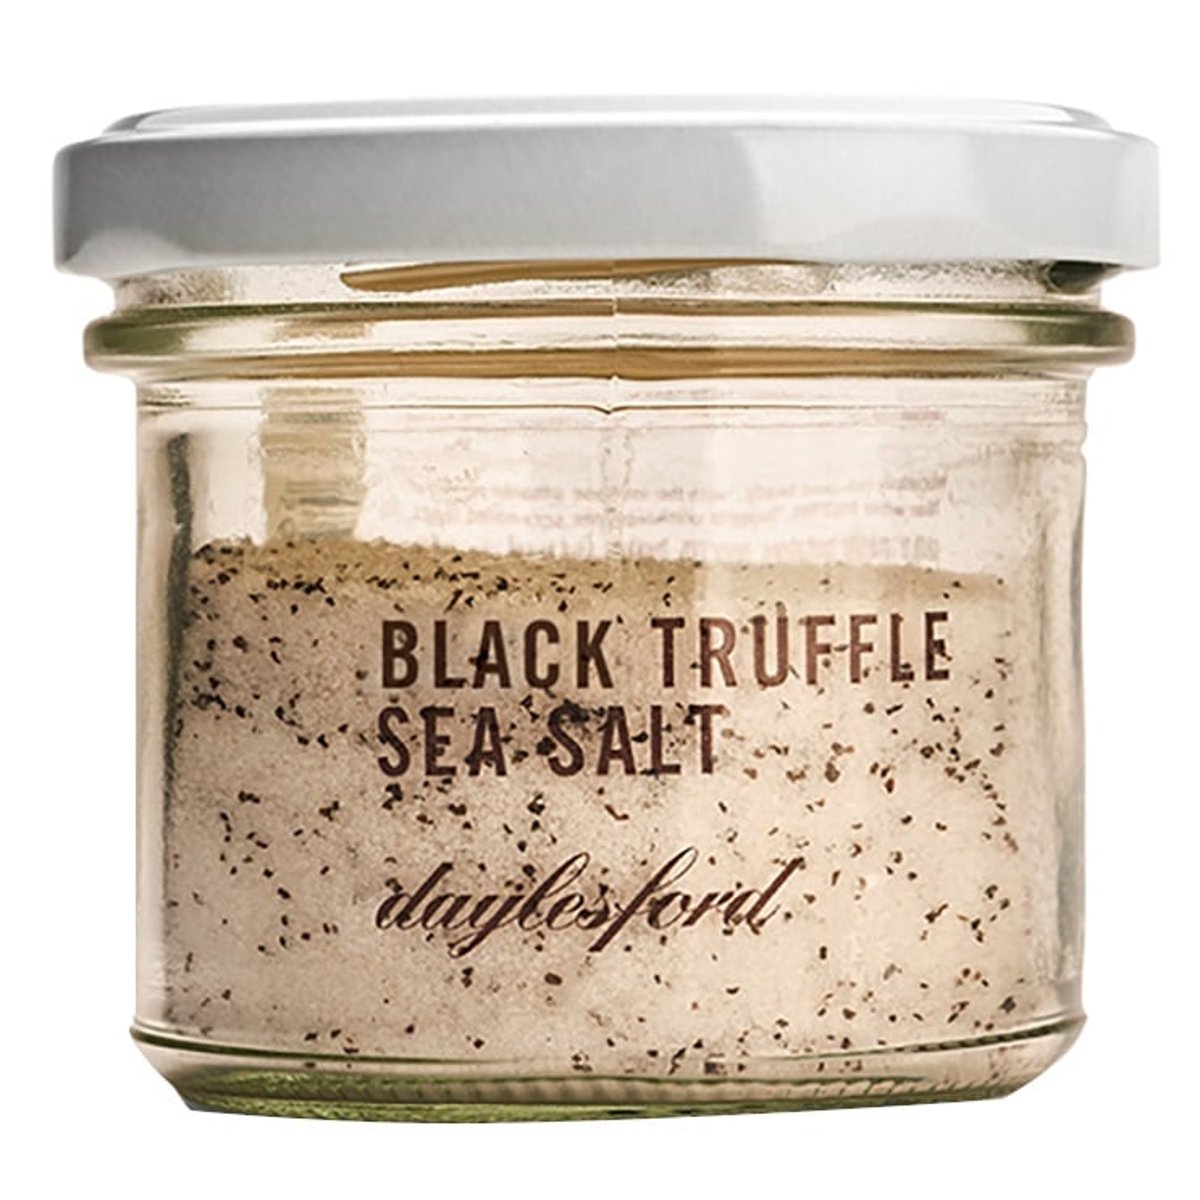 Daylesford Mořská sůl s černým lanýžem